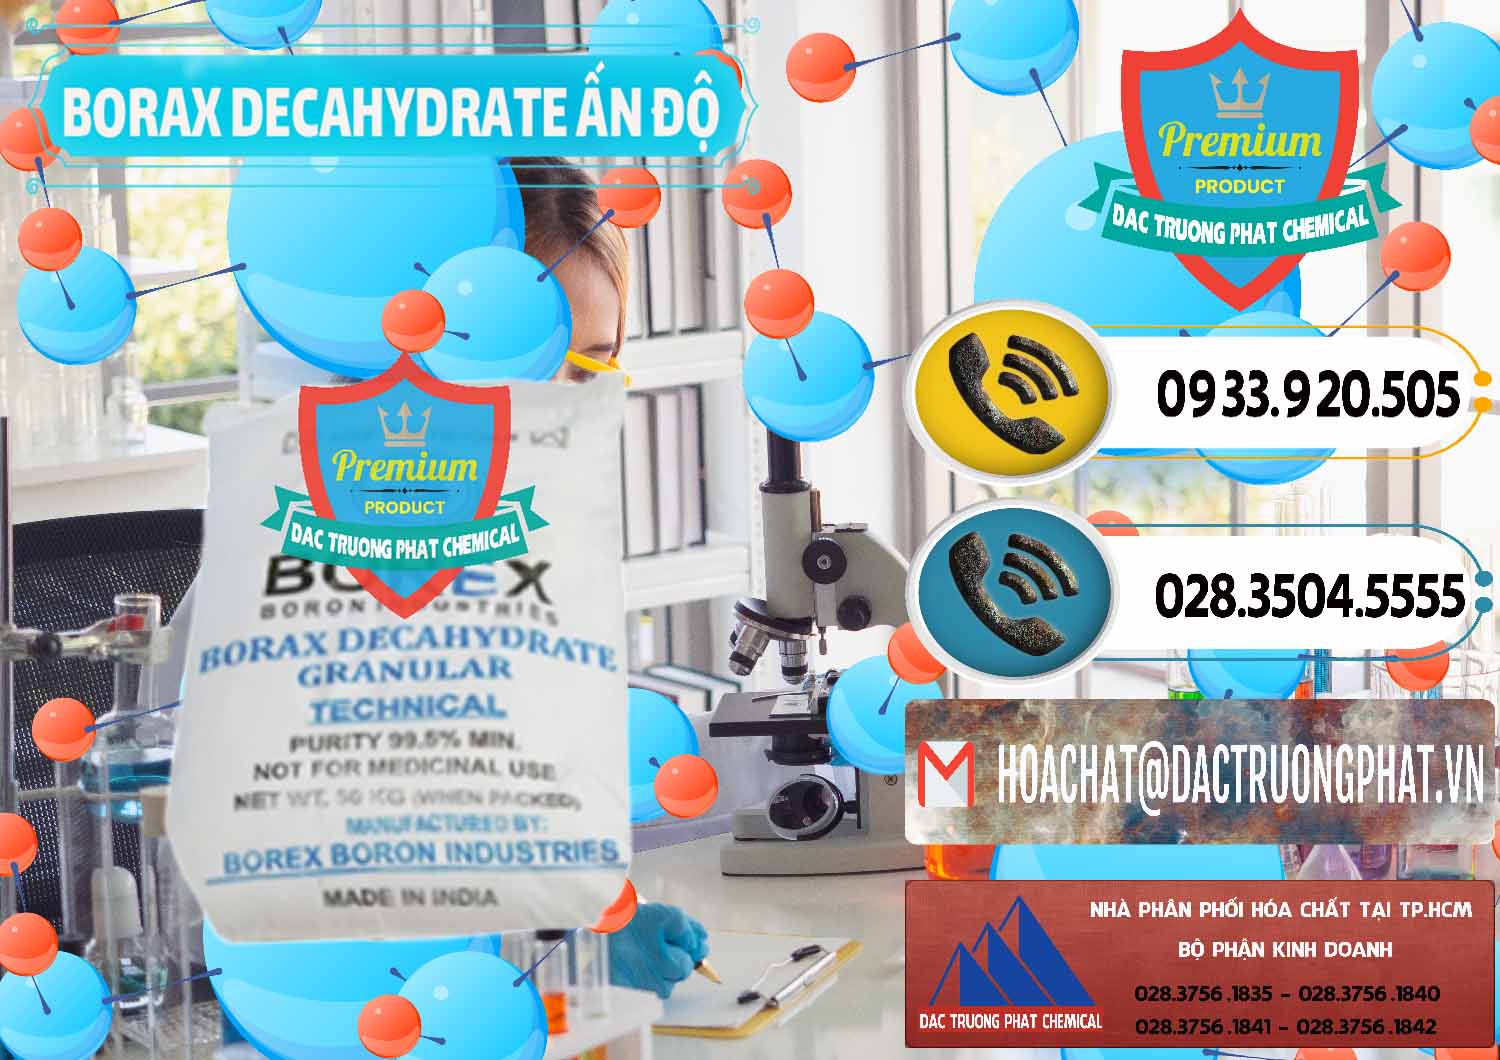 Công ty chuyên bán & cung cấp Borax Decahydrate Ấn Độ India - 0449 - Công ty chuyên phân phối - nhập khẩu hóa chất tại TP.HCM - hoachatdetnhuom.vn